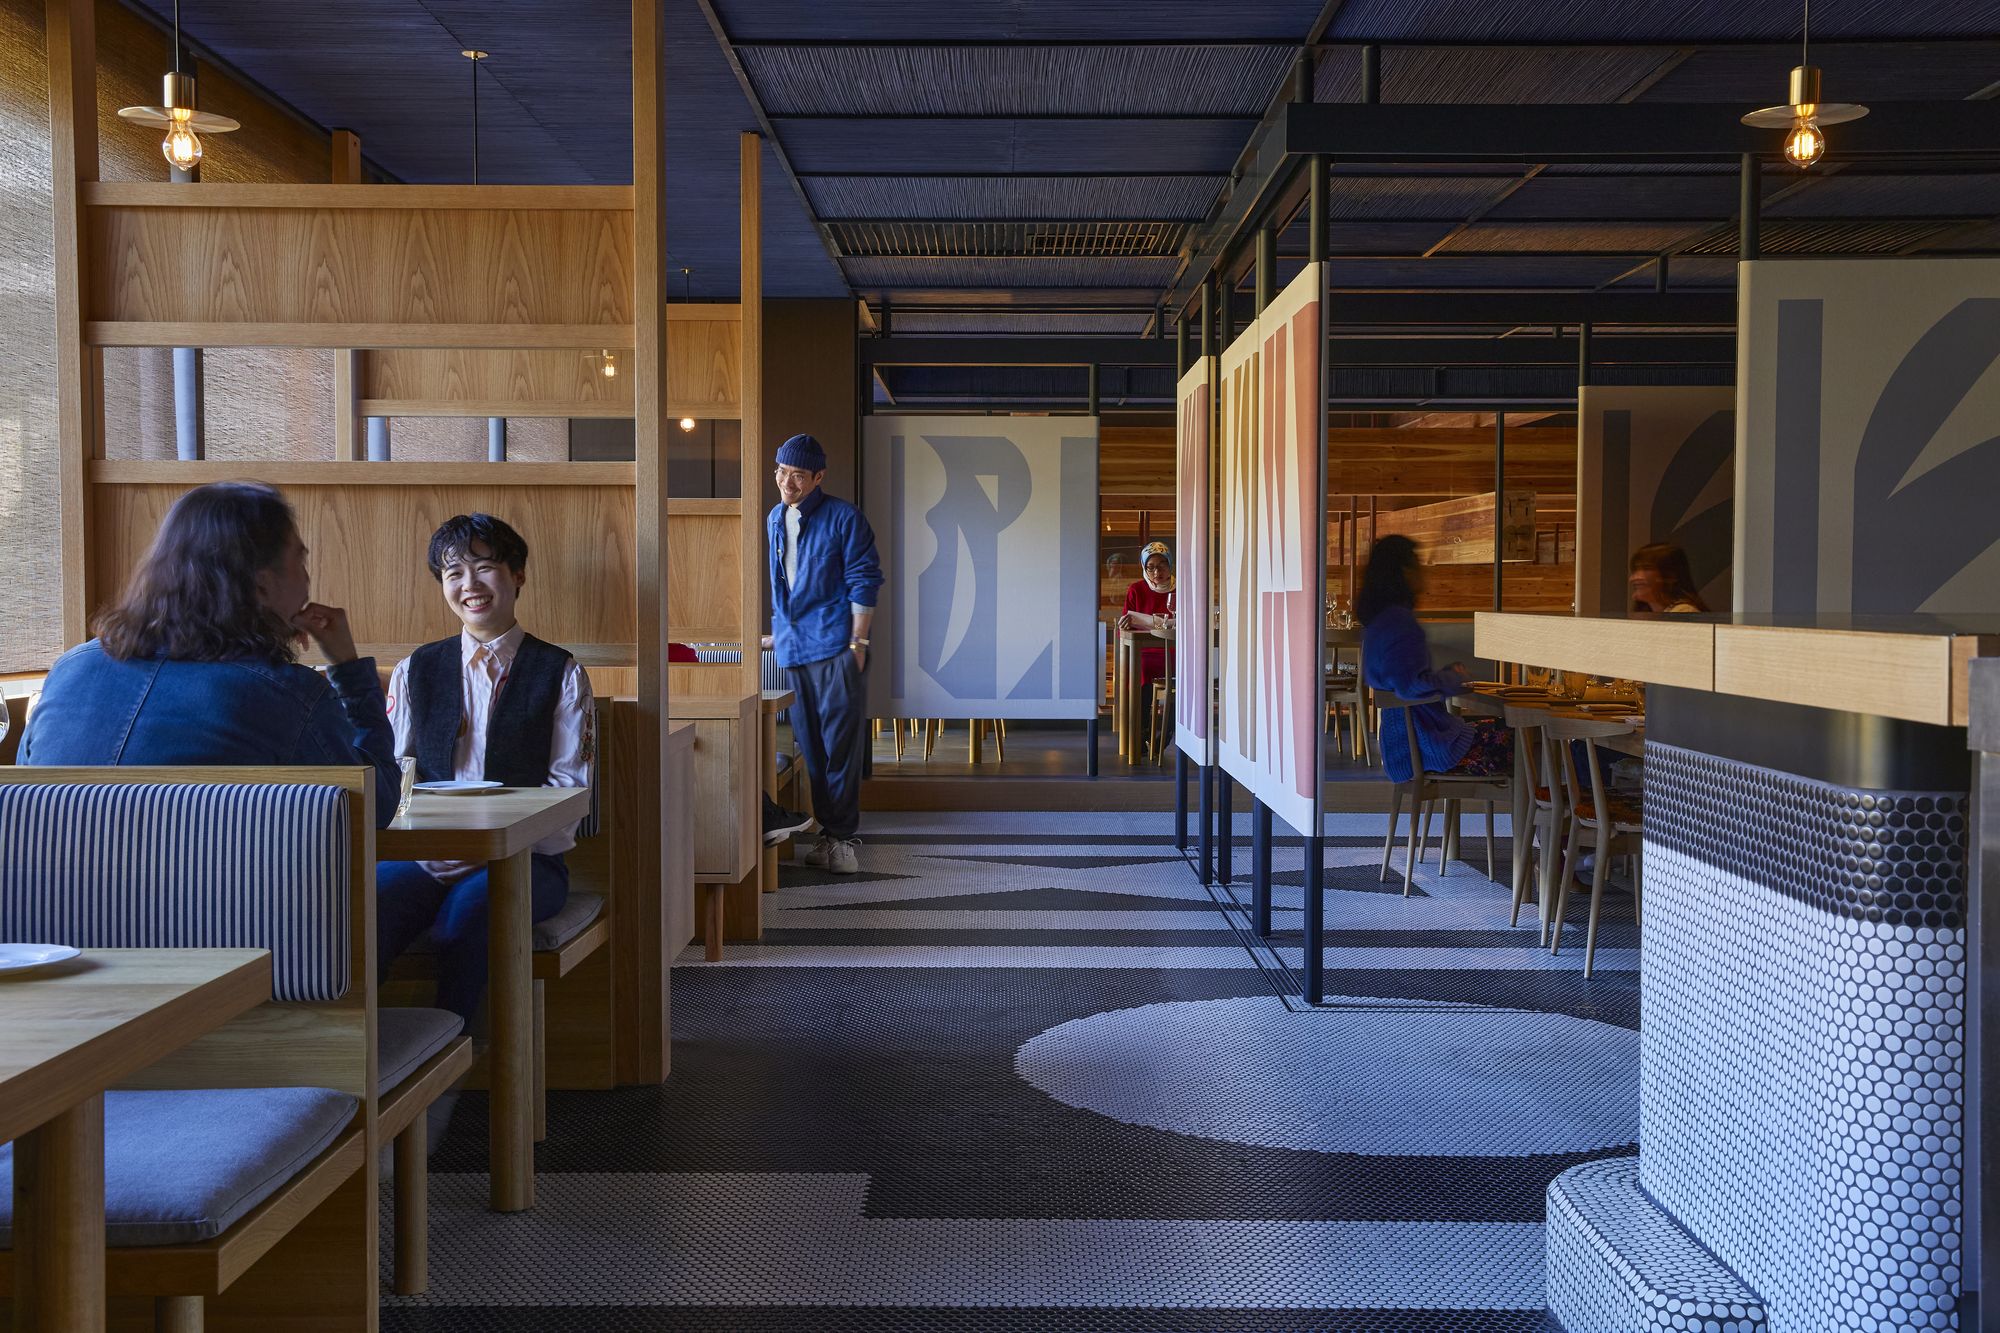 图片[6]|Ace酒店京都|ART-Arrakis | 建筑室内设计的创新与灵感